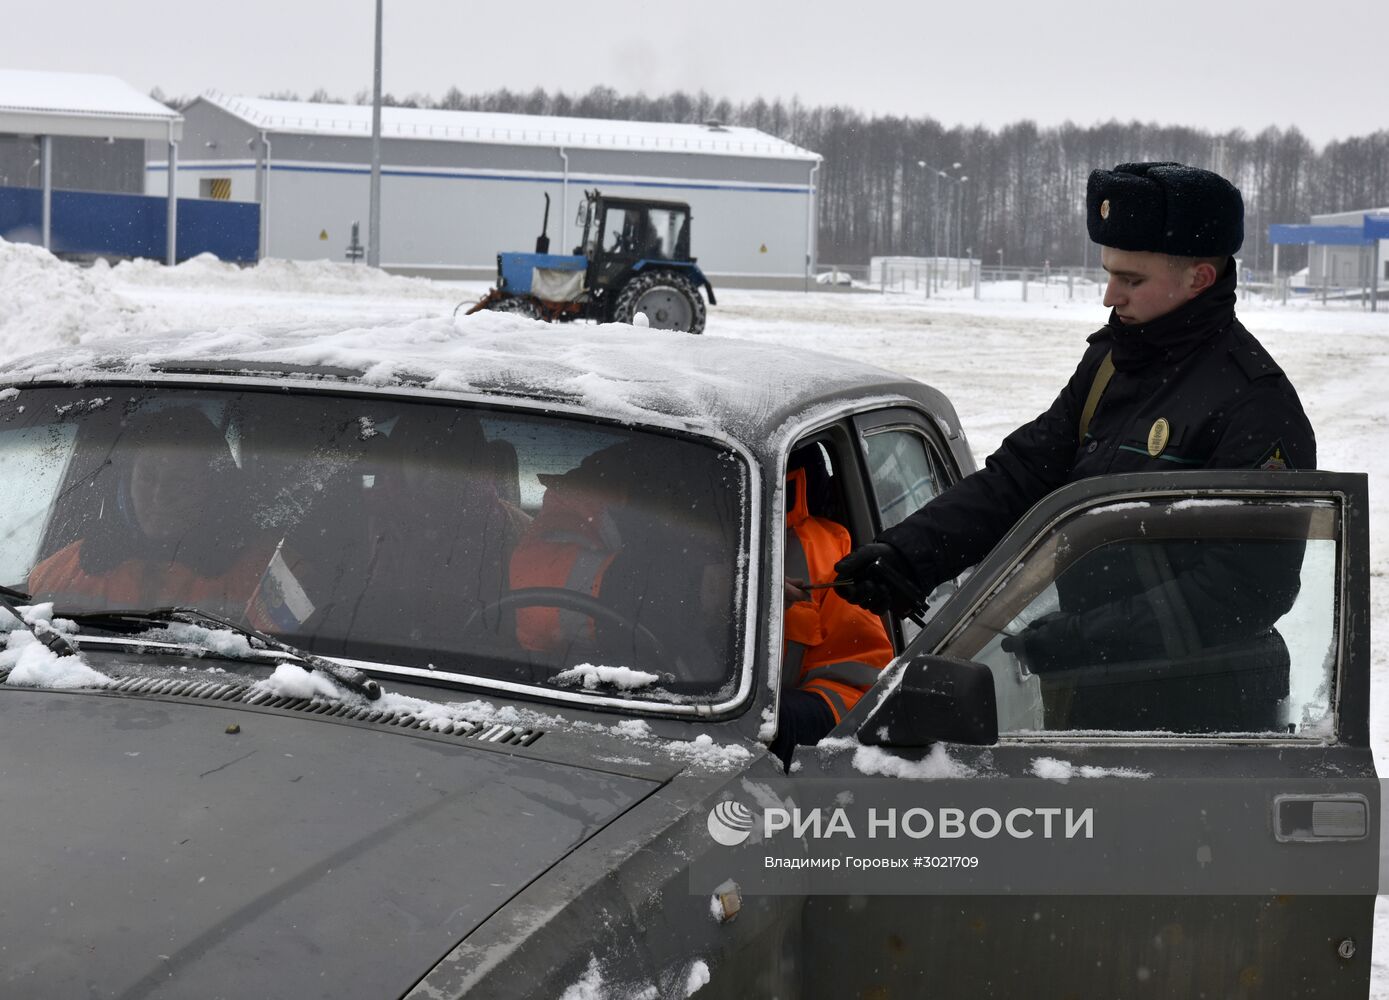 Пограничная зона установлена на границе России и Белоруссии